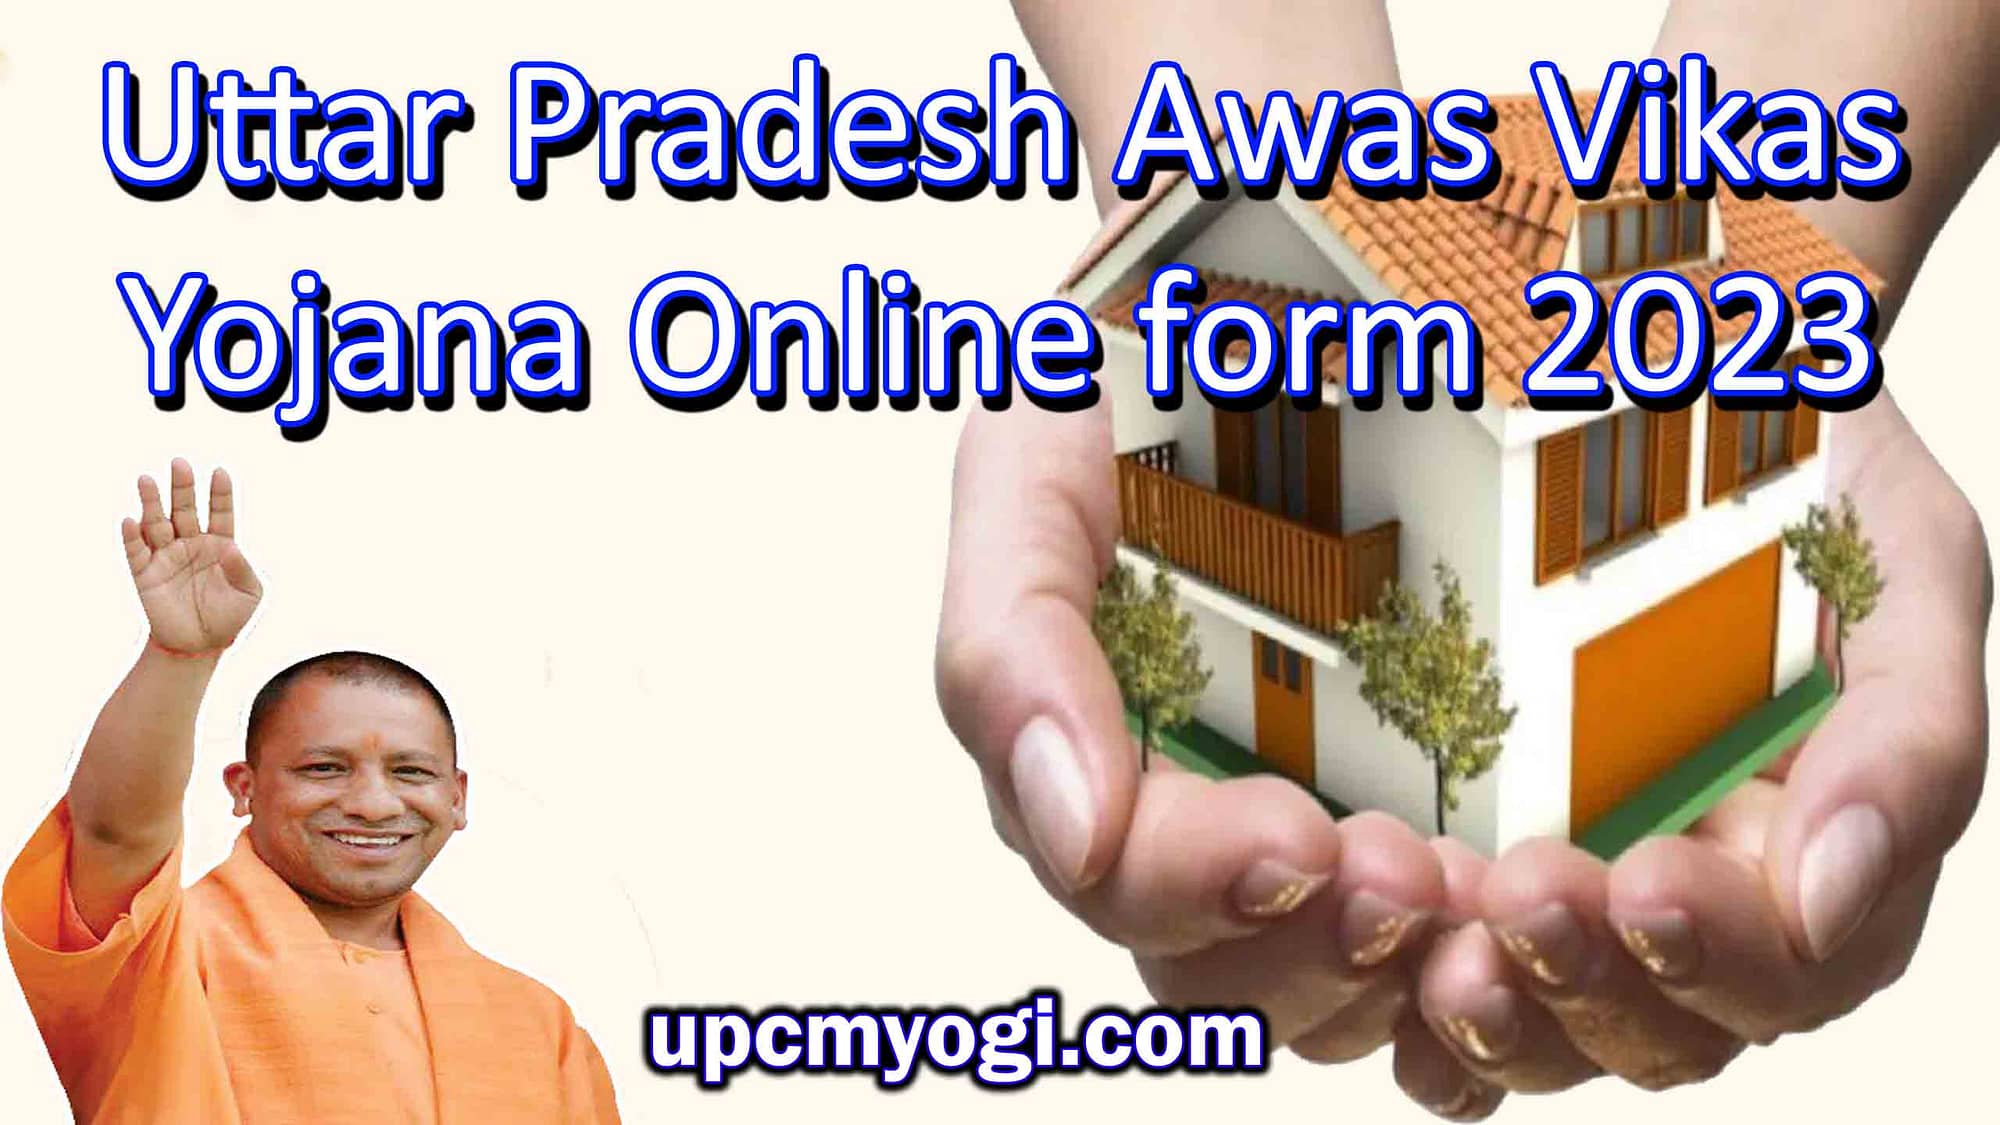 Uttar Pradesh Awas Vikas Yojana ऑनलाइन फॉर्म 2023